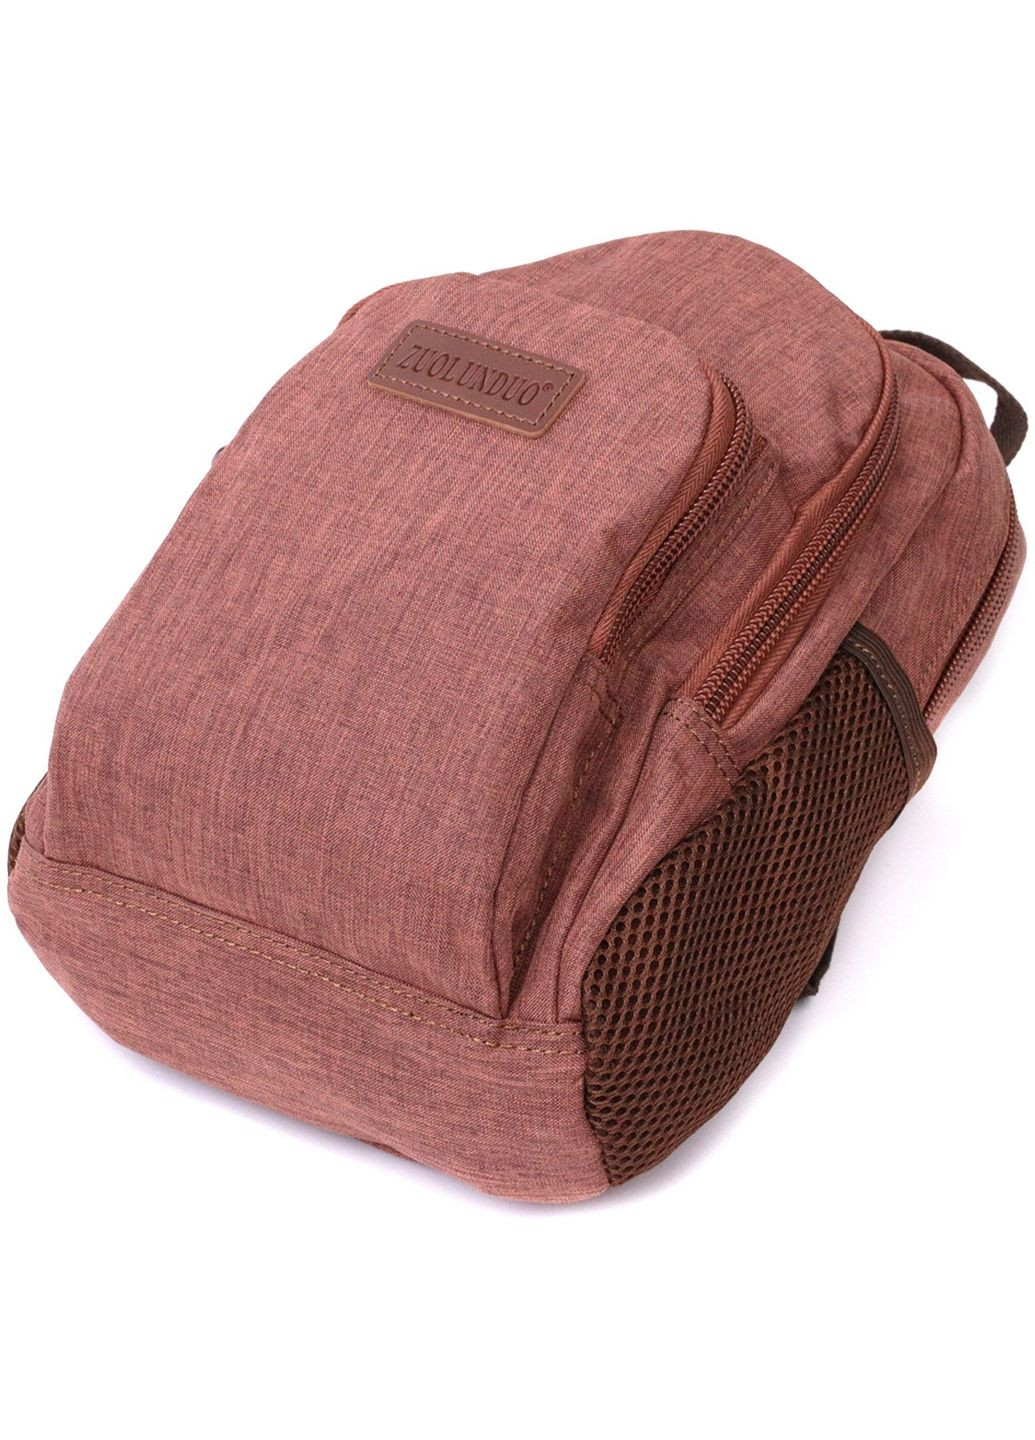 Текстильный рюкзак Vintage (279312033)